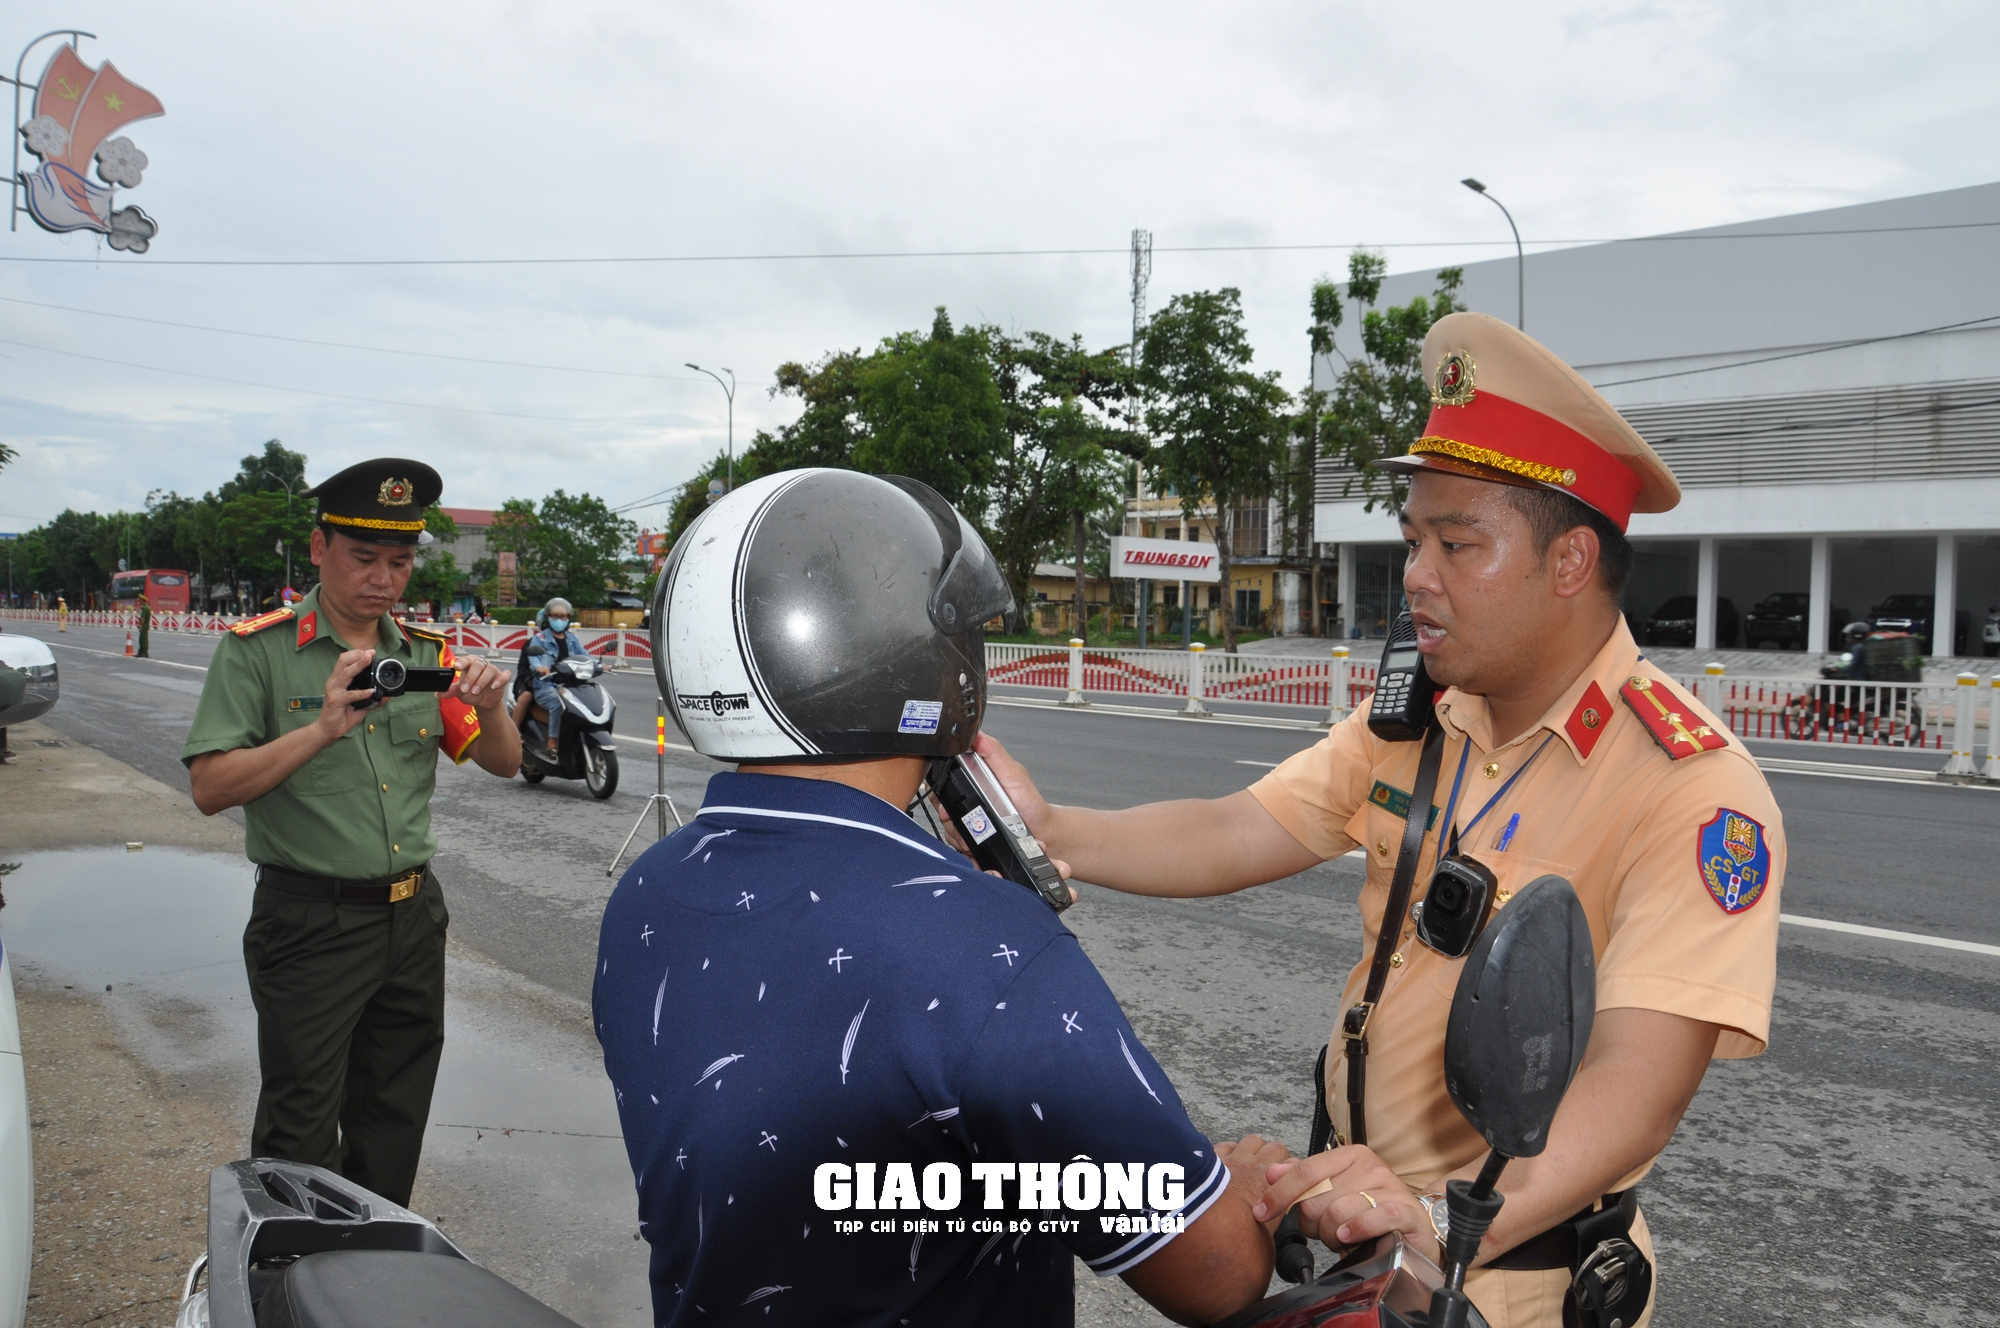 Dàn trận xử lý nồng độ cồn trên QL1 ở tỉnh Thừa Thiên-Huế: Loạt người vi phạm sau bữa ăn trưa - Ảnh 11.